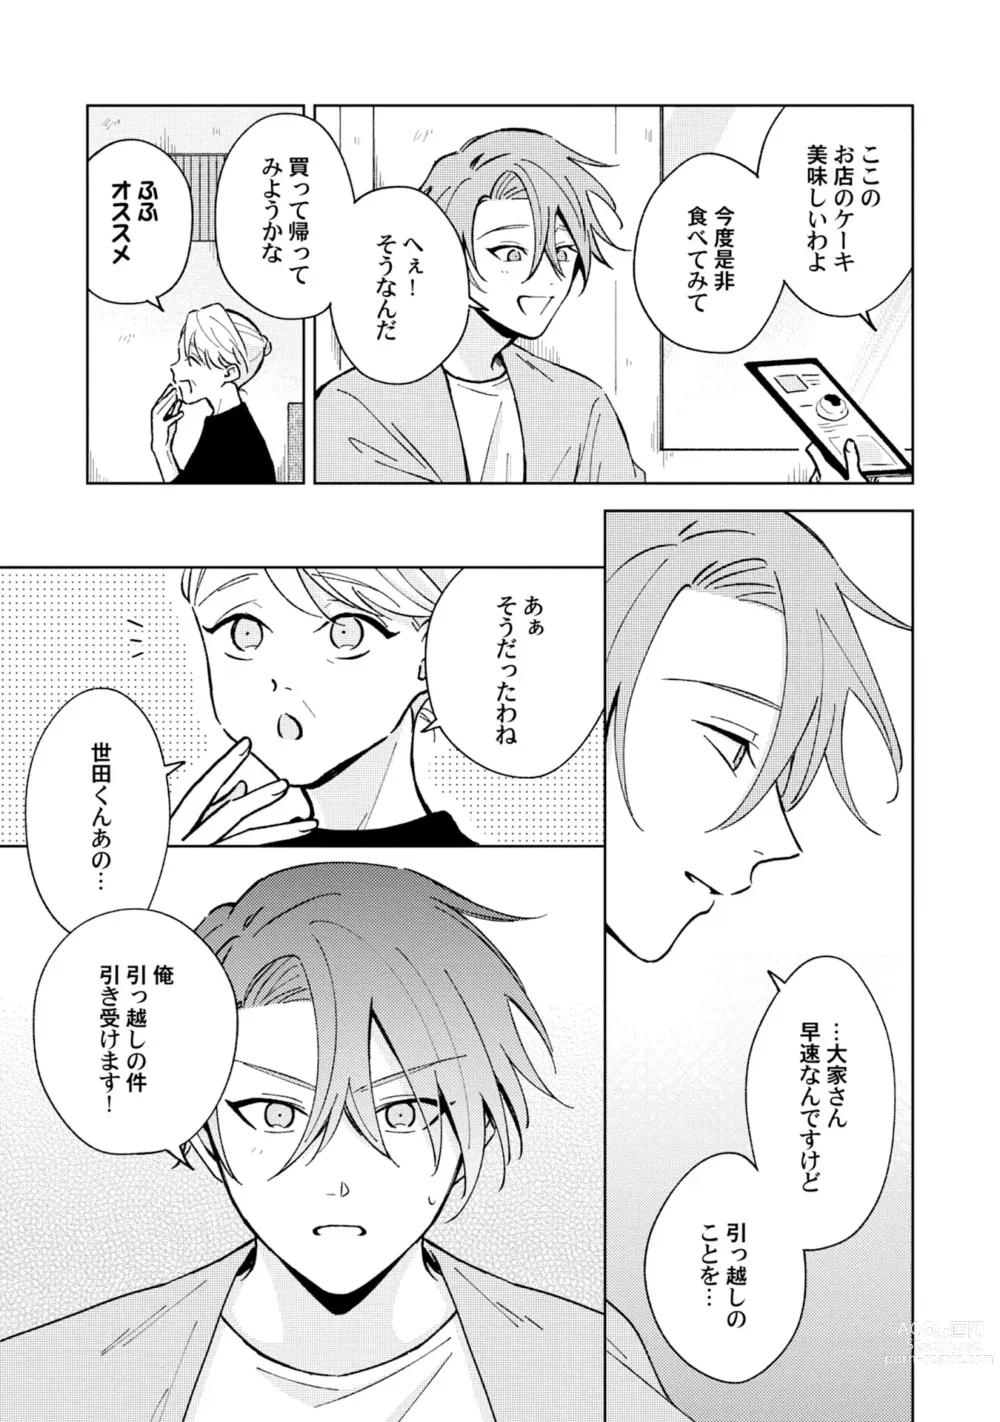 Page 11 of manga Toho 3-byou no Trouble Love Room 5